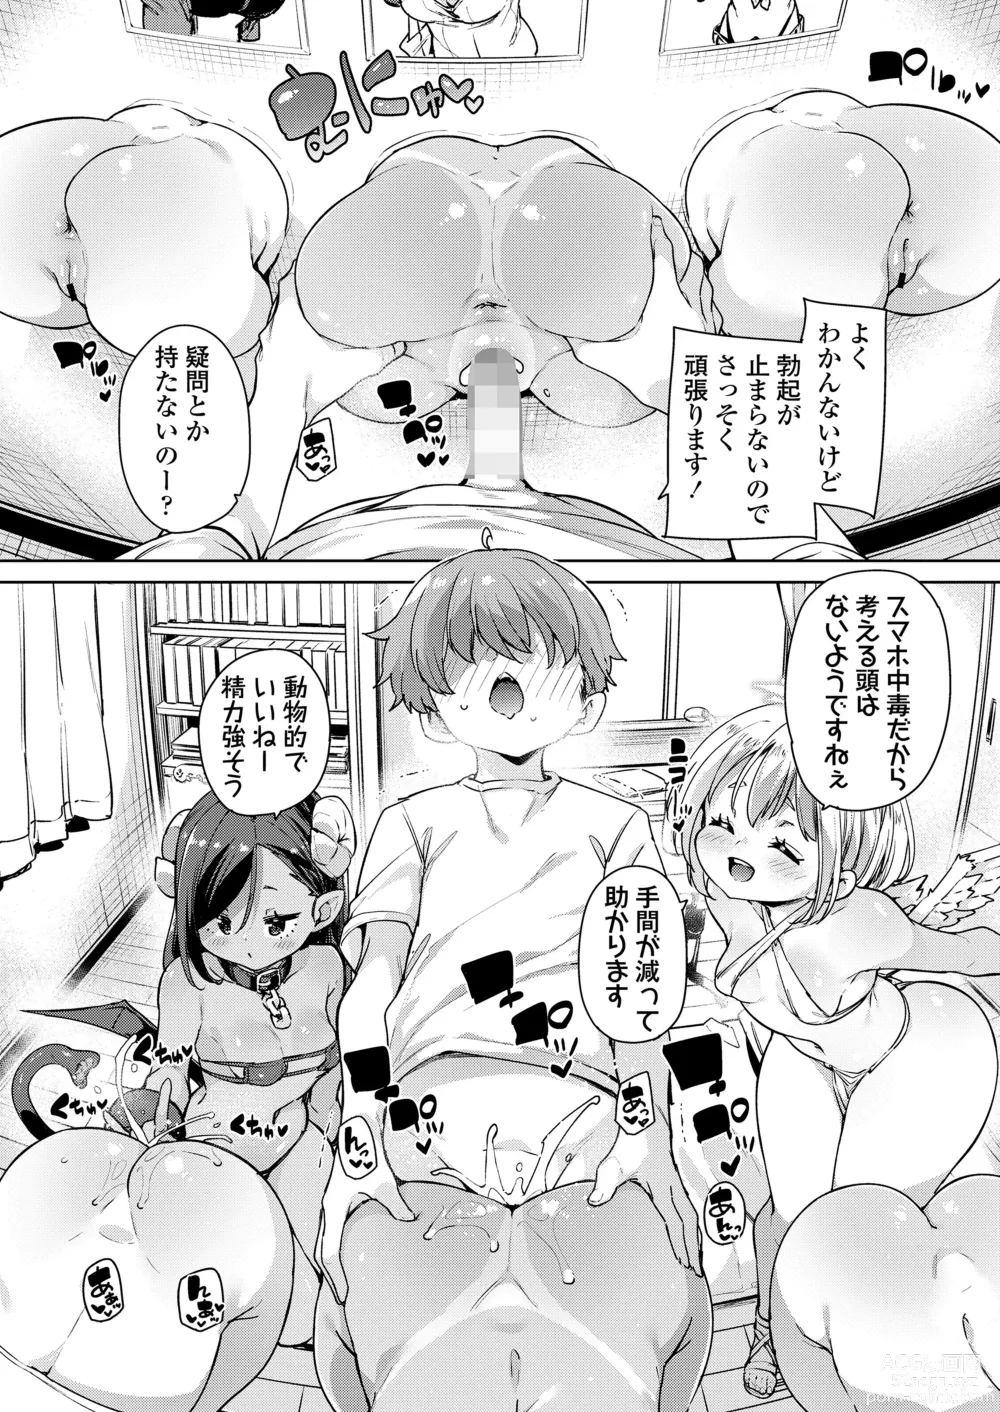 Page 8 of manga Towako Oboro Emaki 14